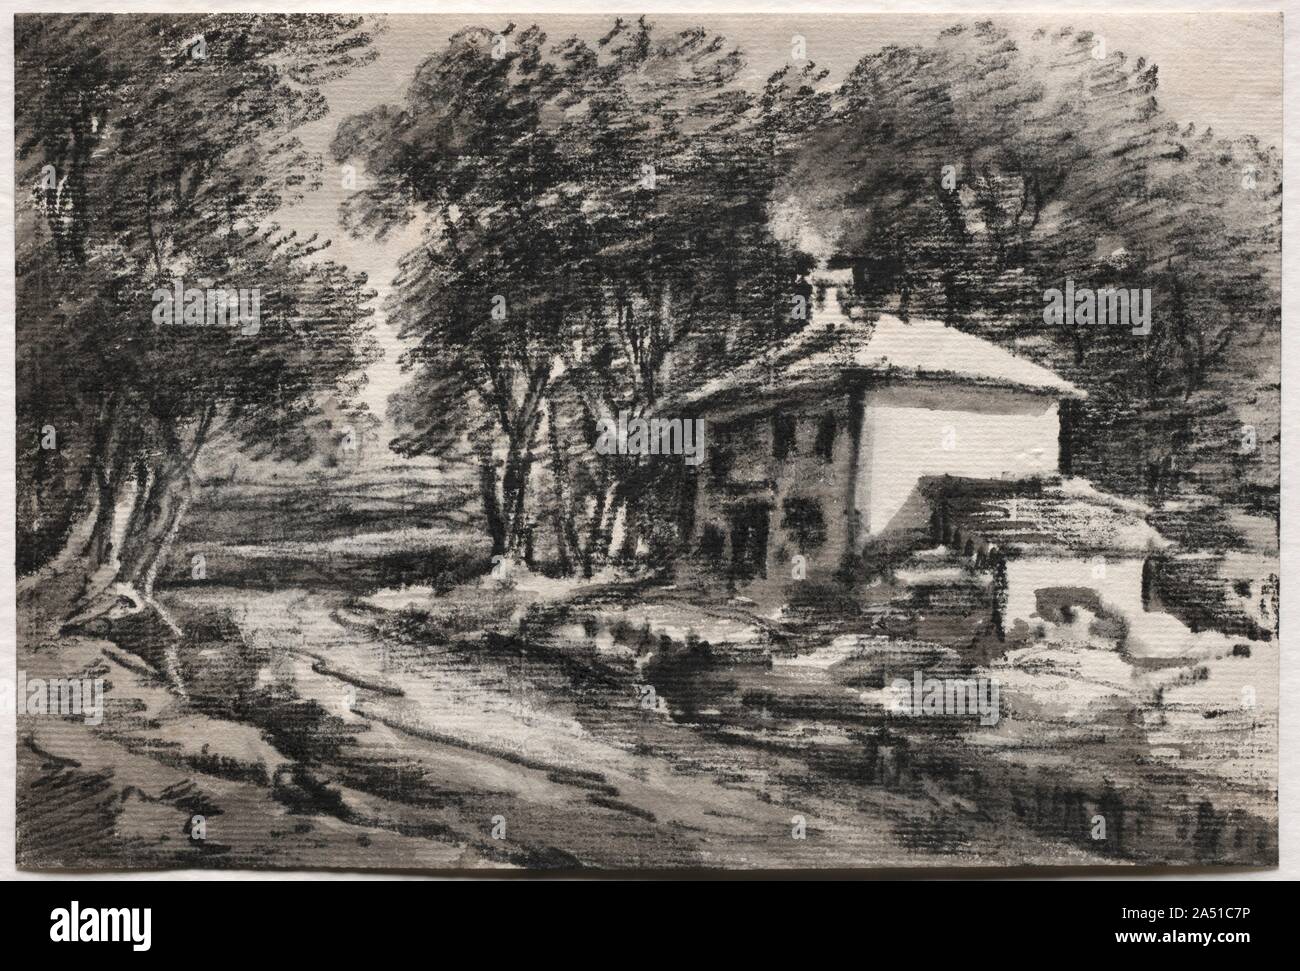 Paesaggio con Cottage (recto), c. 1820s. Il dottor Monro è meglio conosciuto come patrono che esercitò notevole influenza a Londra nel mondo dell arte nel XVIII e XIX secolo, ma fu anche un disegnatore dilettante e autorità seguace di Thomas Gaunsborough. Il medico&#x2019;s disegni sono stati monocromatica, realizzato a lavare con aggiunte di carbone, gesso, o india inchiostro in emulazione di Gainsborough&#x2019;s moody viste rurali. Sul tergo del disegno è una mise-en-page di caricature e una collina-forse bizzarramente disegnati da più artisti a uno del medico&#x2019;s saloni. Foto Stock